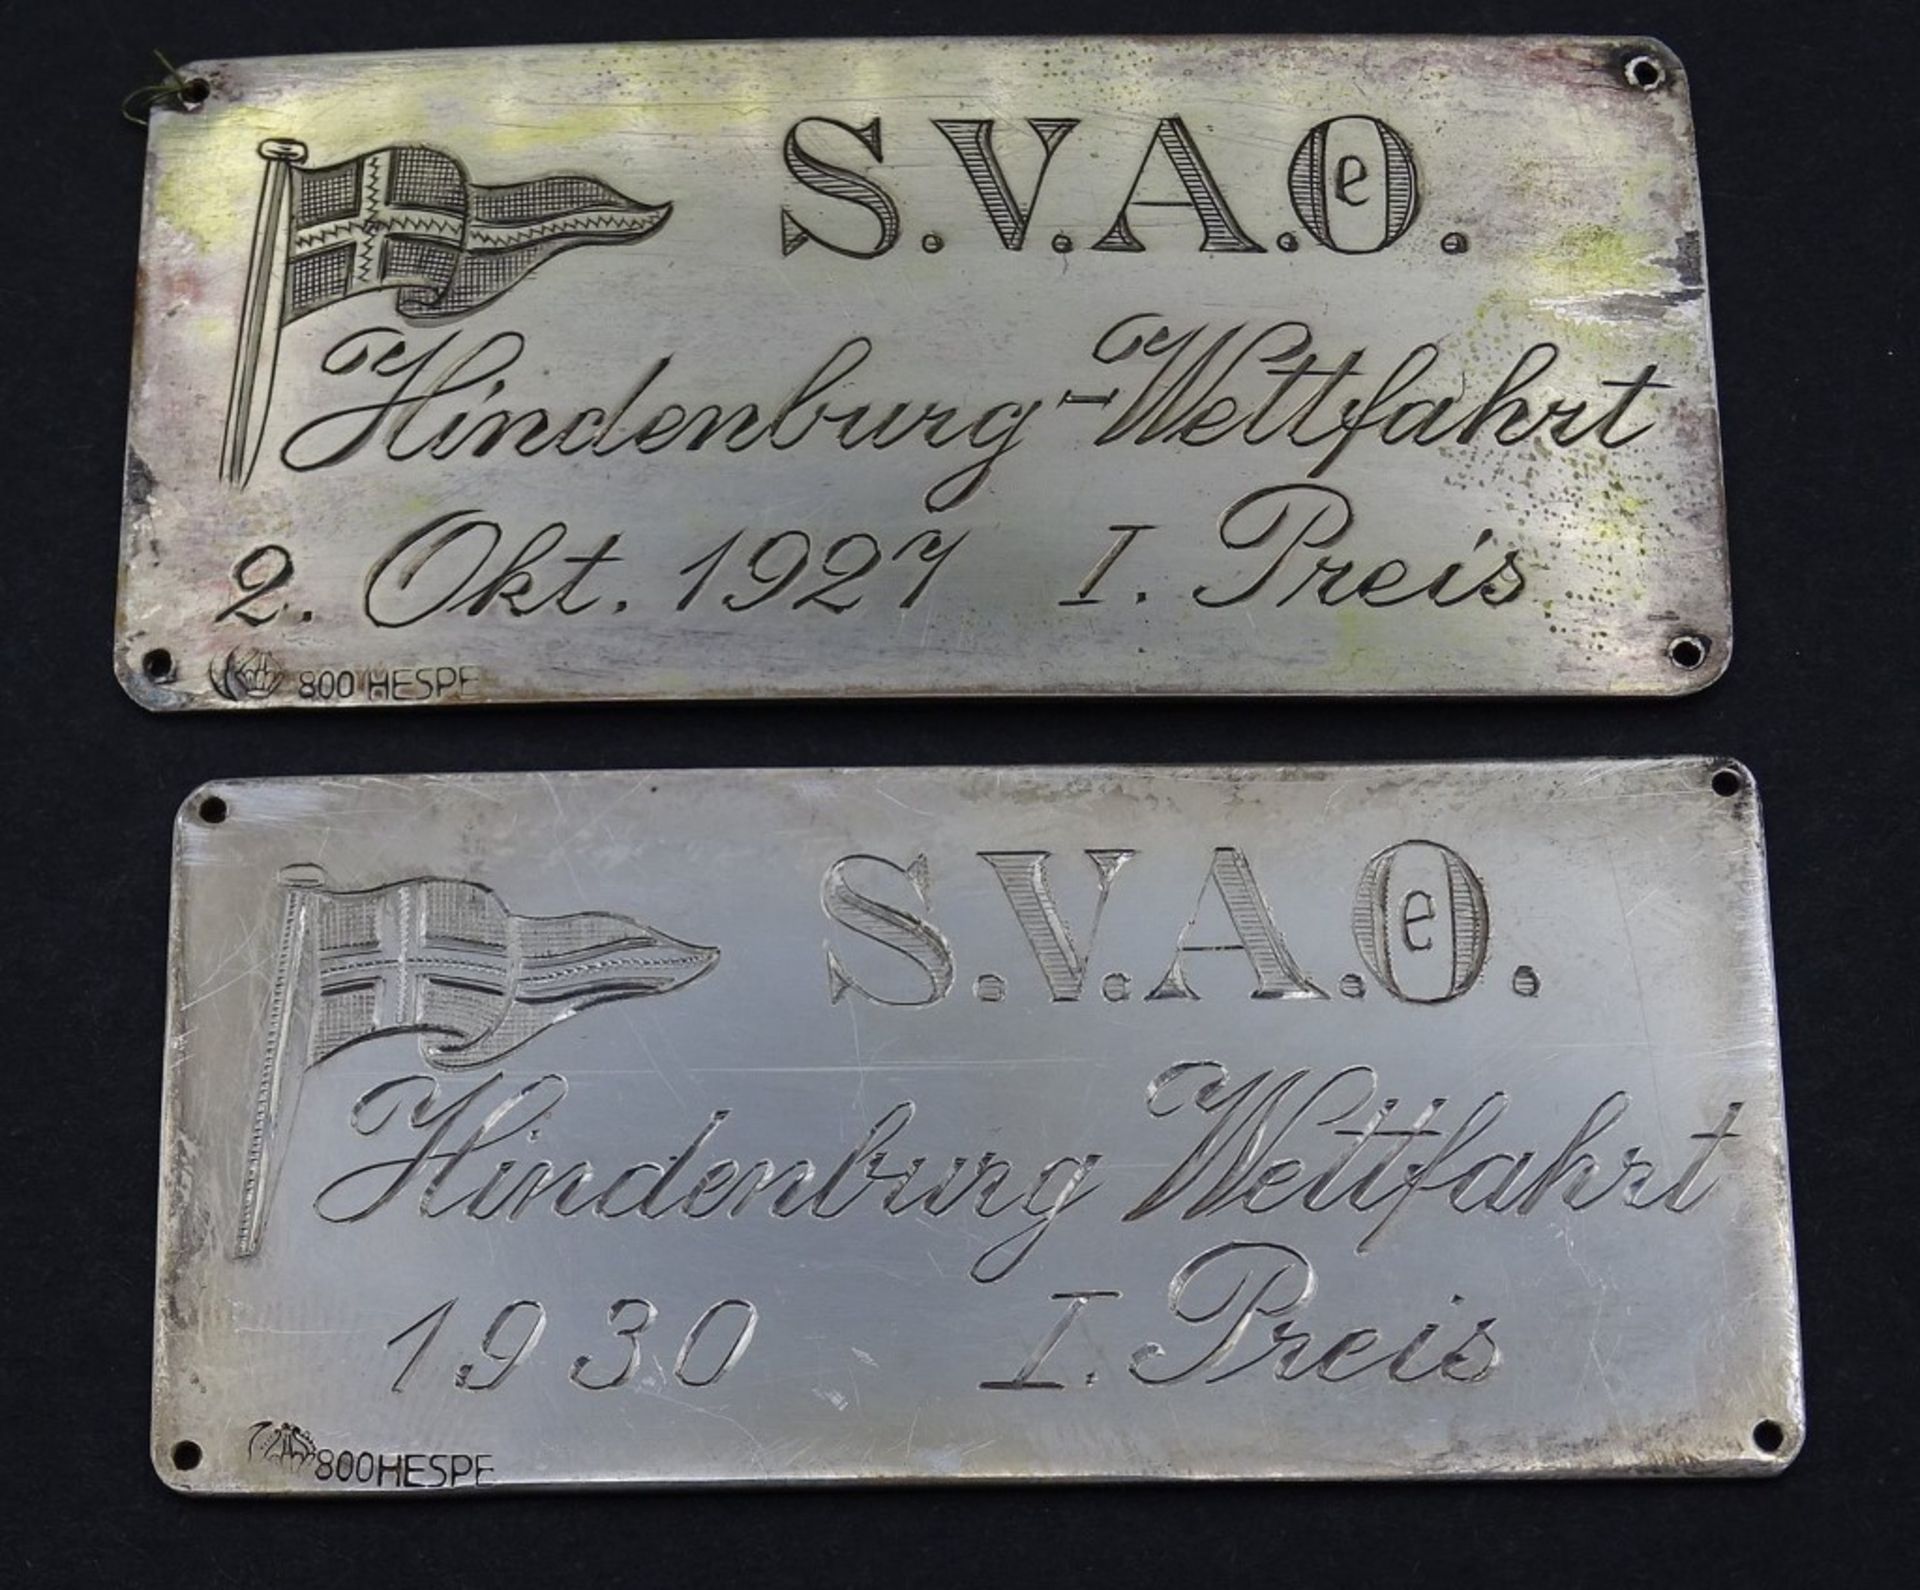 Zwei Silber Plaketten S.V.A.O.Hindenburg Wettfahrt, je 1.Preis, 1921 /1930 (S.V.A.O - Segler